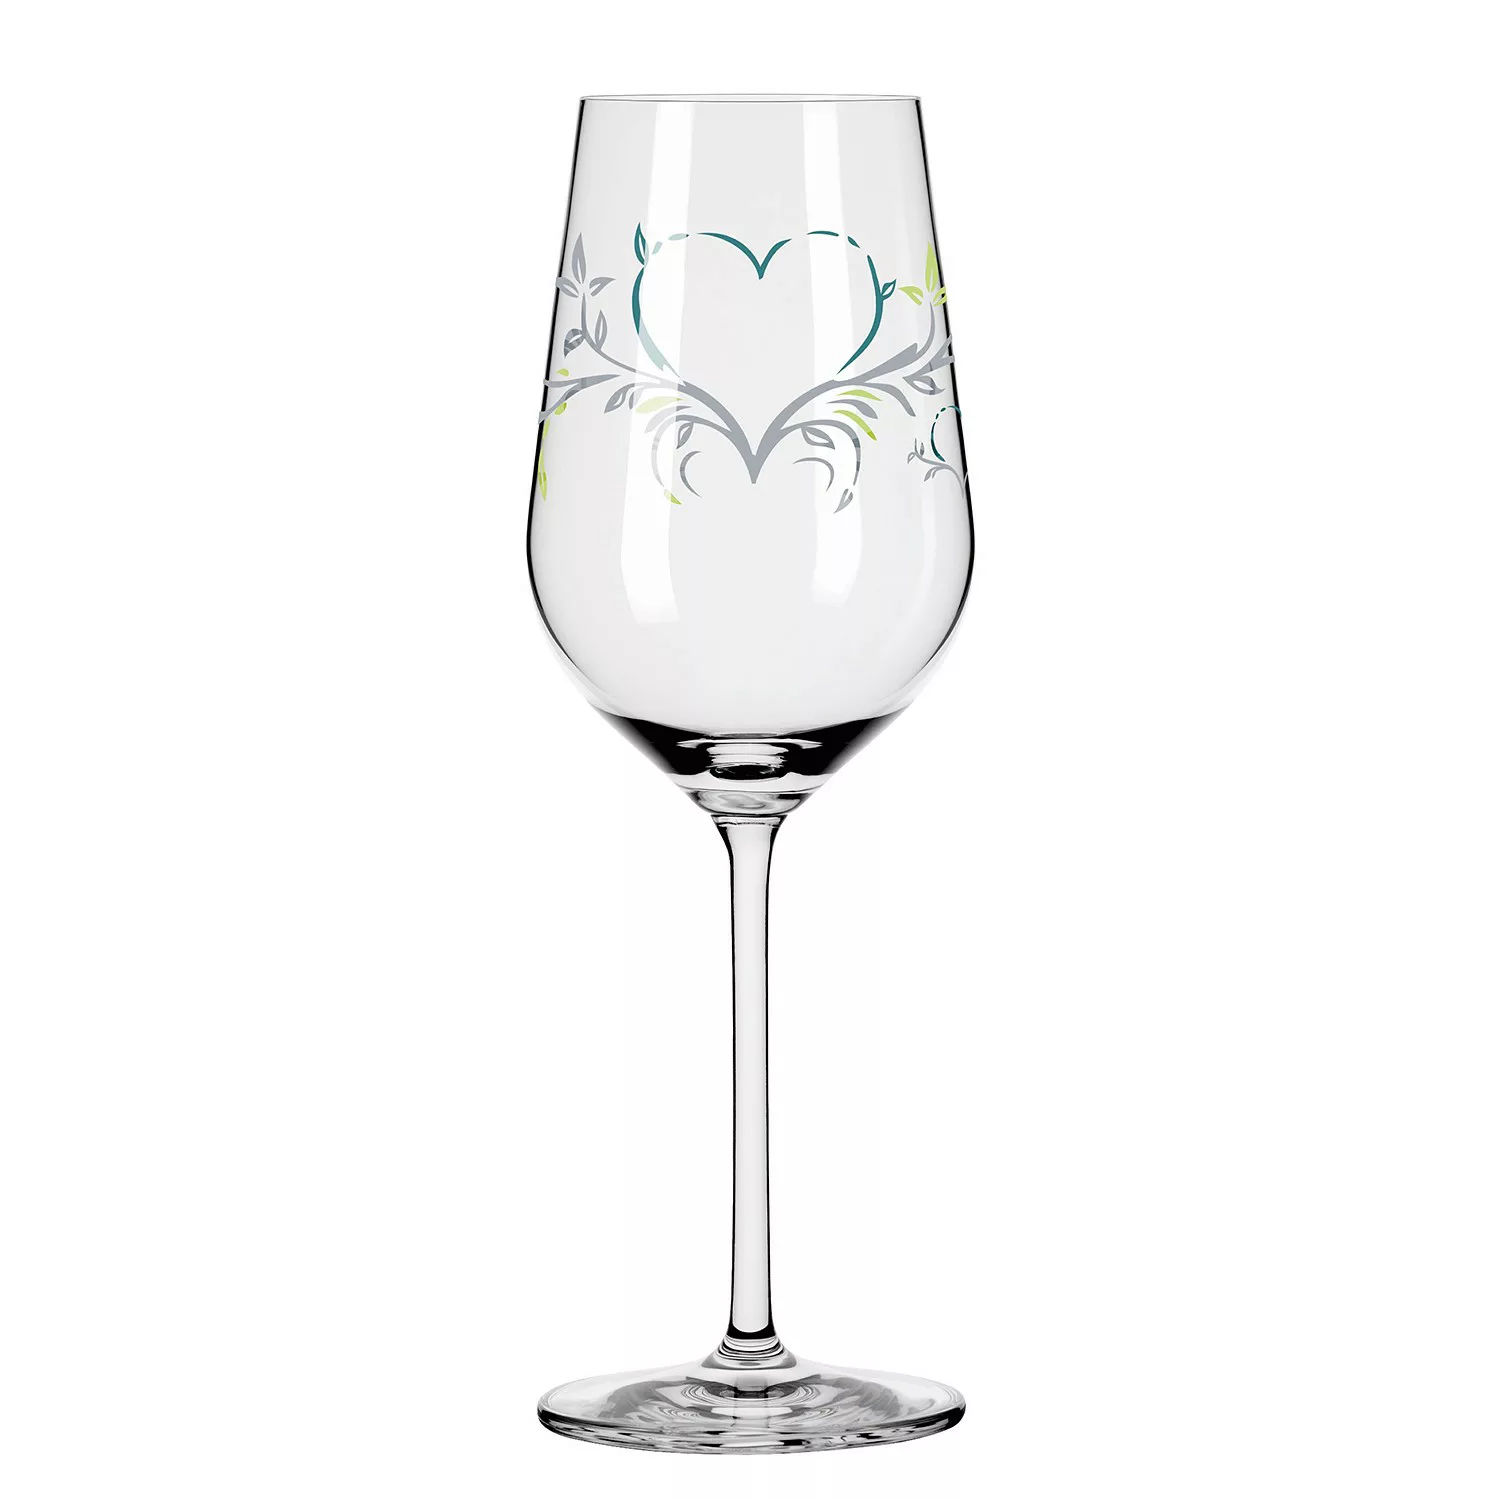 home24 Weißweinglas Herzkristall günstig online kaufen